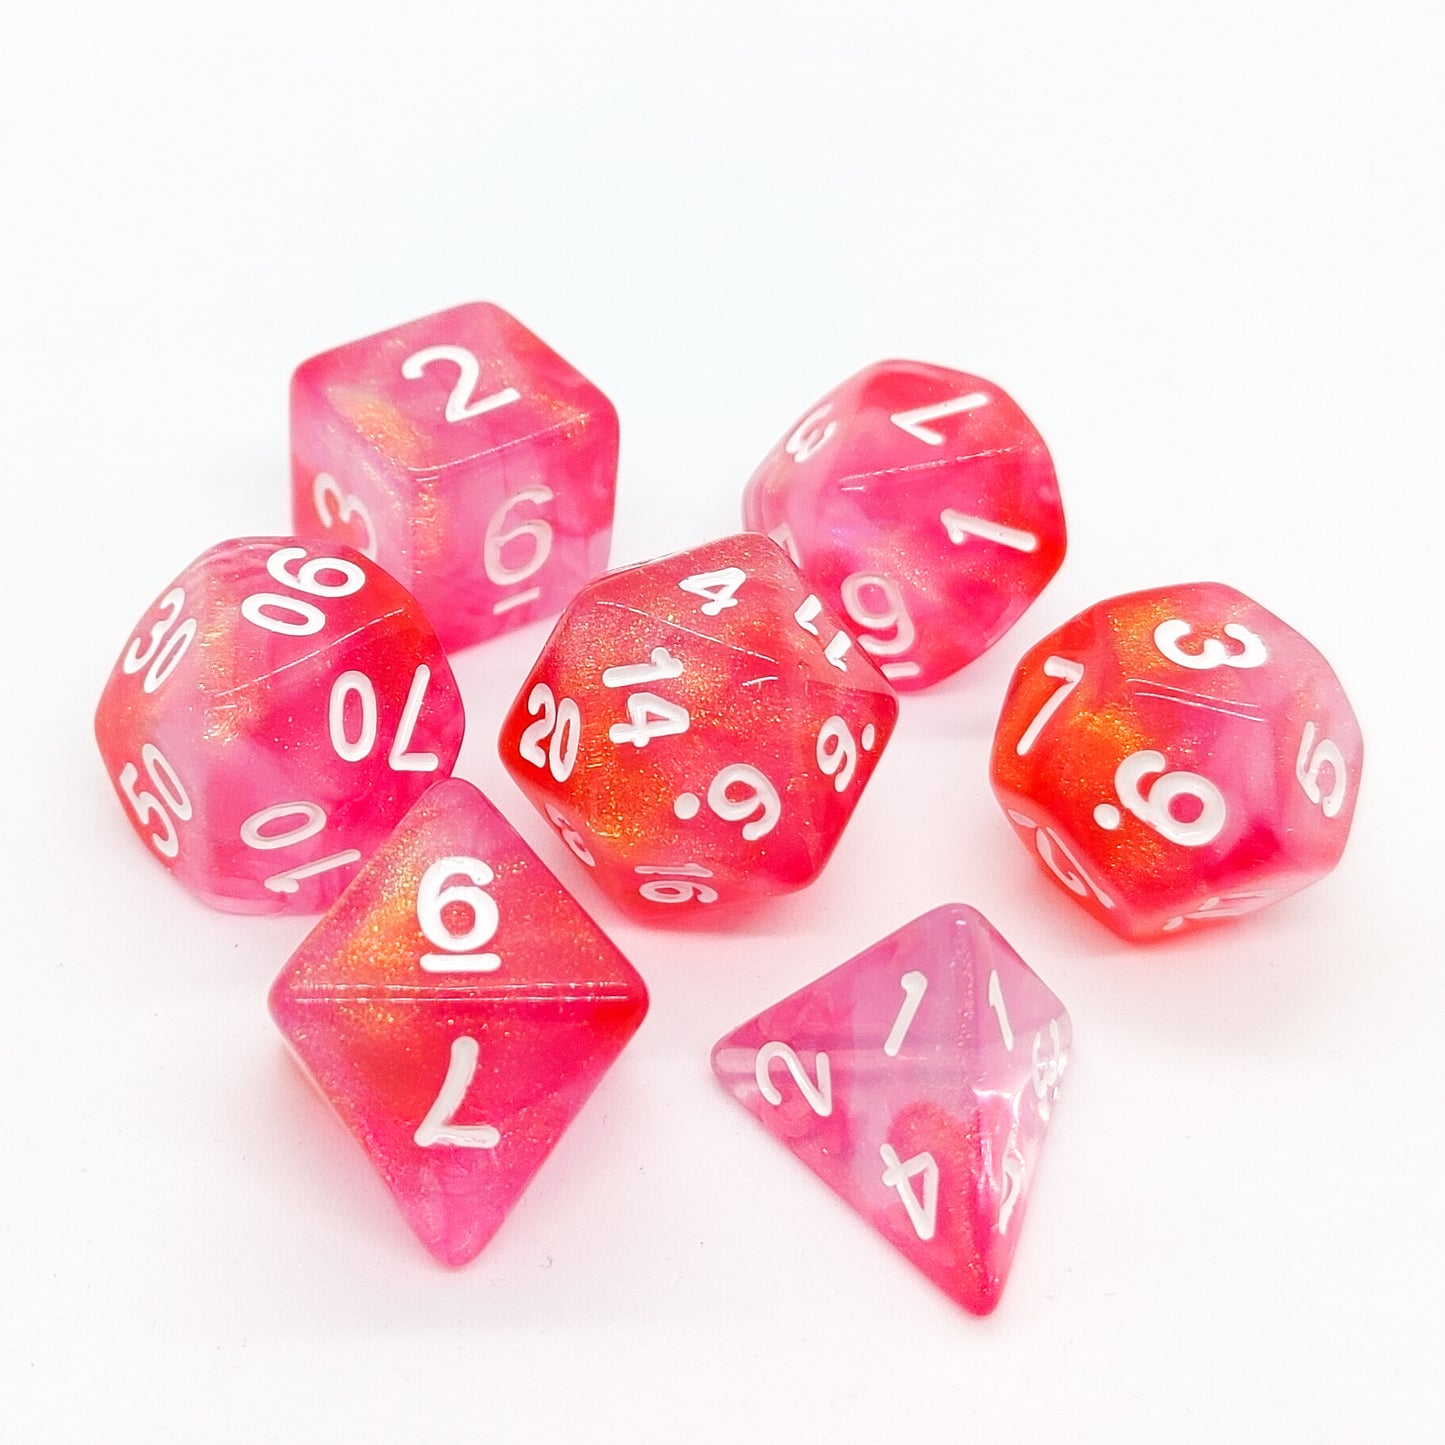 Himbo - Iridescent dice set - 7 piece RPG dice set